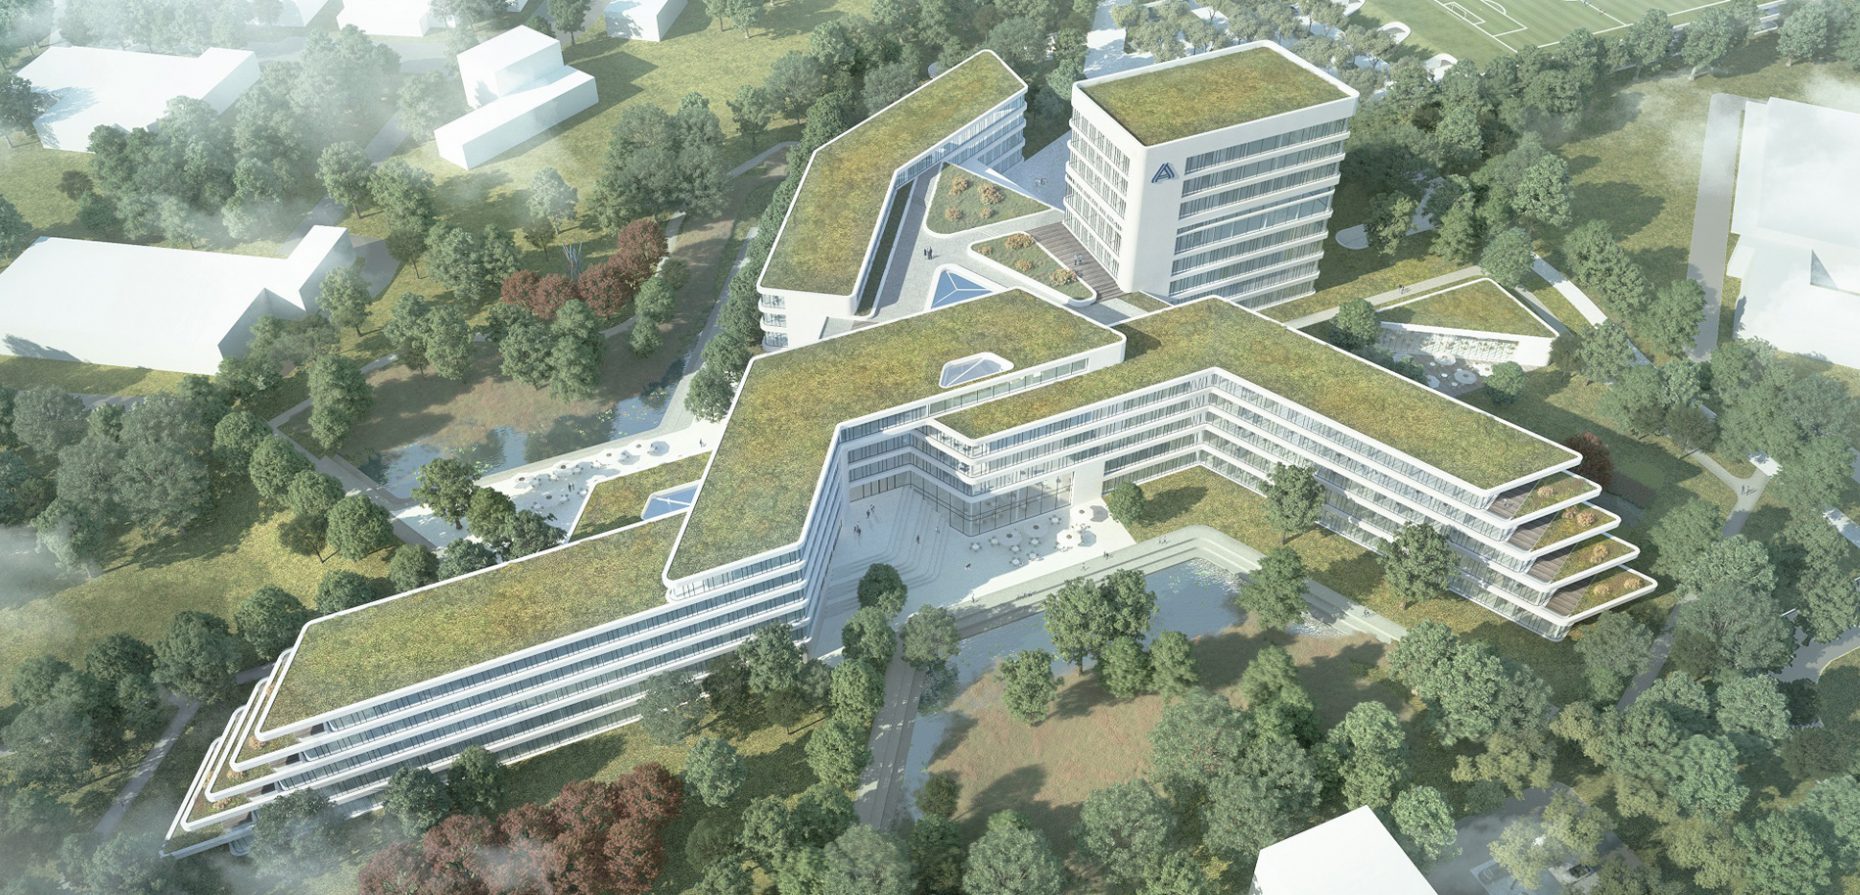 Die signethafte Form des Architekturentwurfs für den neuen ALDI Nord Campus, entwickelt von BAID, macht auf Anhieb klar, um wessen Standort es sich handelt.